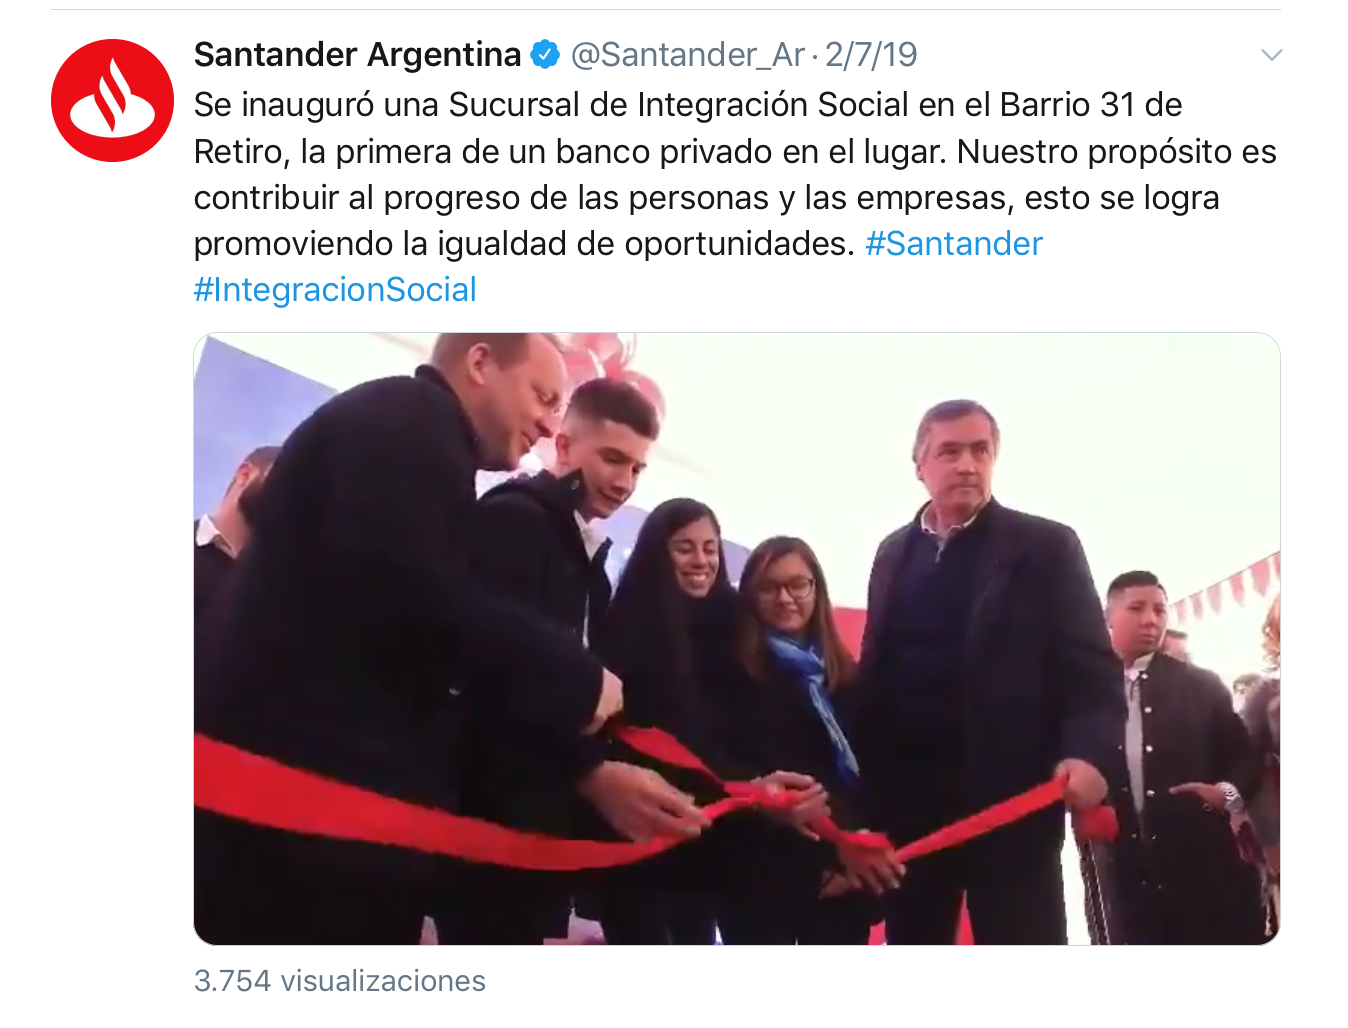 En Argentina Banco Santander también está trabajando para promover la igualdad de oportunidades